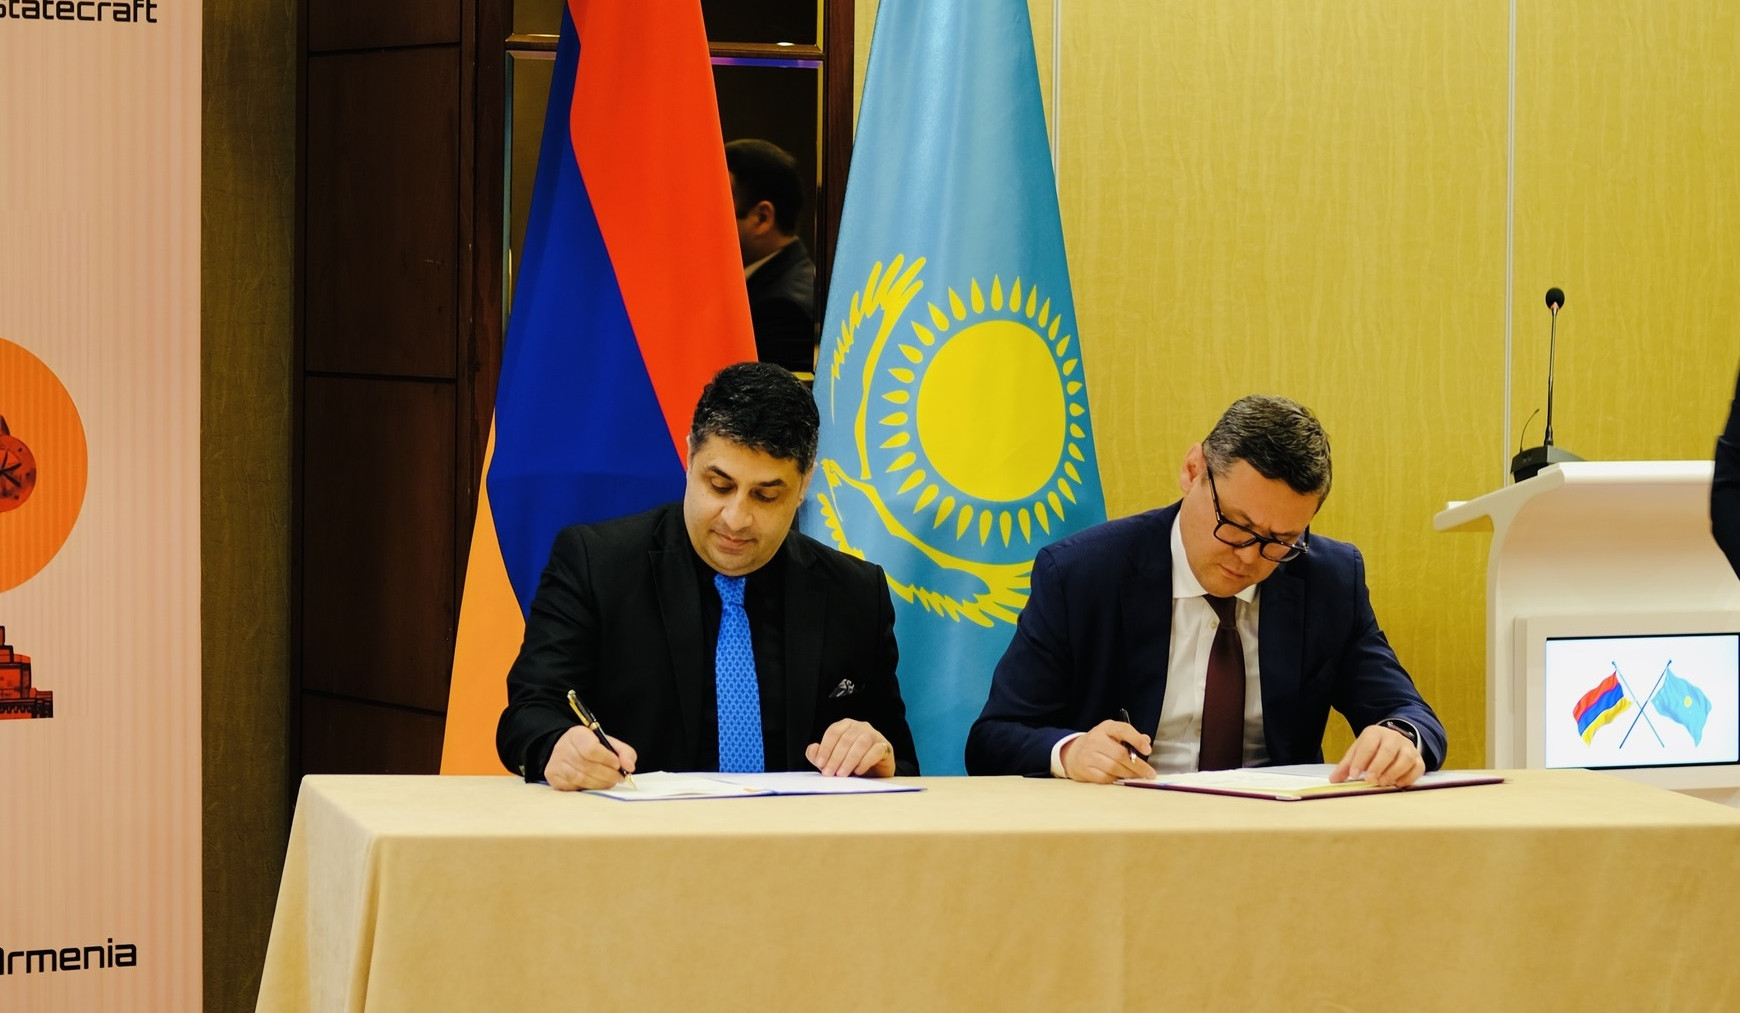 Հայաստանի ազգային դիմակայության և Ղազախստանի ռազմավարական հետազոտությունների ինստիտուտները ստորագրել  են փոխըմբռնման հուշագիր